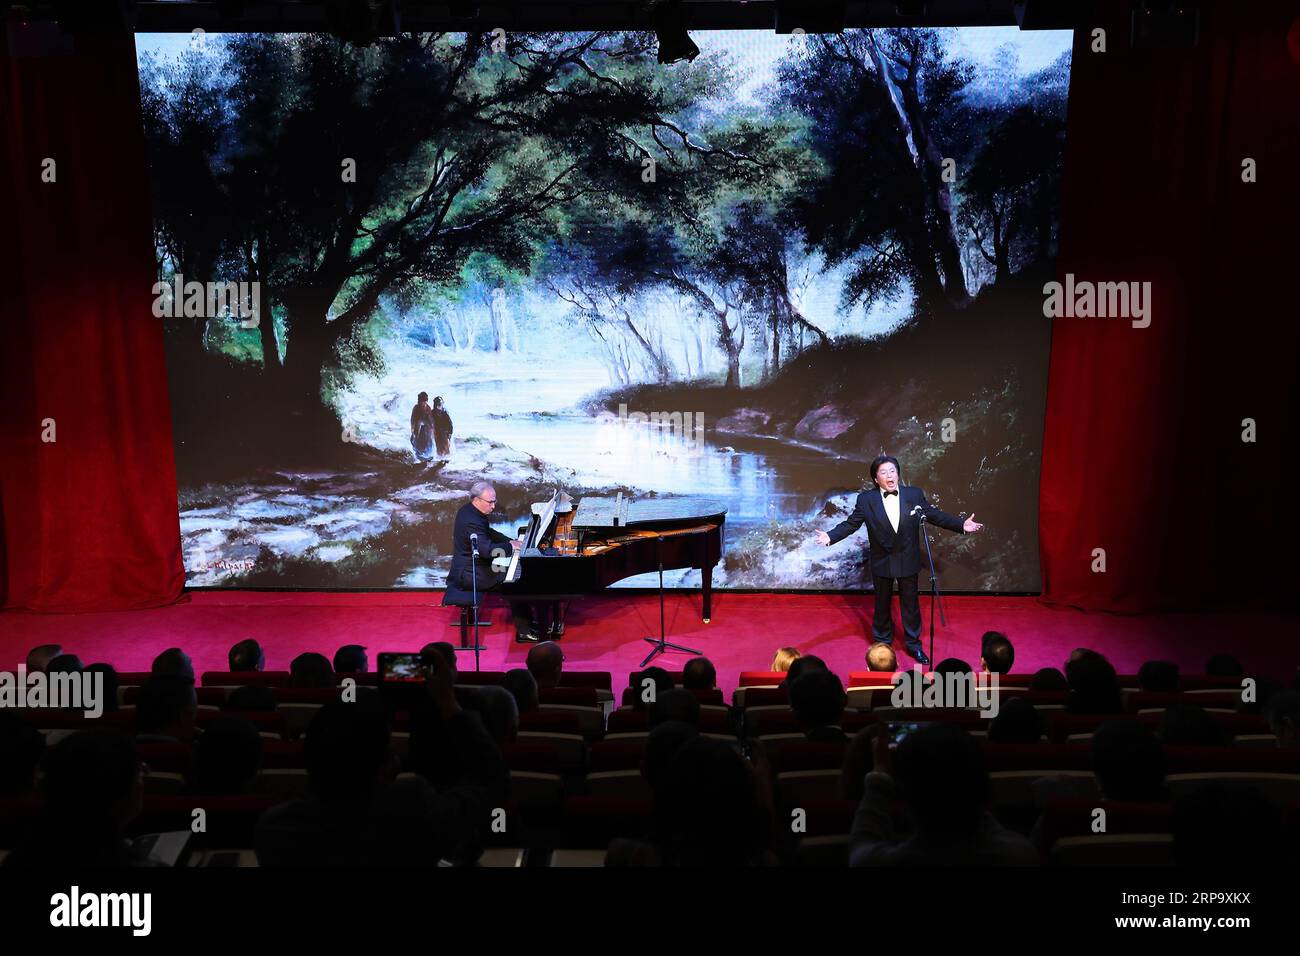 (190418) -- BRUSELAS, 18 de abril de 2019 (Xinhua) -- Tenor Wang Tiemin (R) actúa durante el Concierto de Amistad China-Bielorrusia en el Centro Cultural China en Bruselas, Bélgica, el 18 de abril de 2019. Músicos de China y Bielorrusia realizaron una docena de actuaciones durante el Concierto de Amistad China-Bielorrusia en Bruselas el jueves. (Xinhua/Zhang Cheng) BÉLGICA-BRUSELAS-CHINA-BIELORRUSIA-CONCIERTO DE AMISTAD PUBLICATIONxNOTxINxCHN Foto de stock